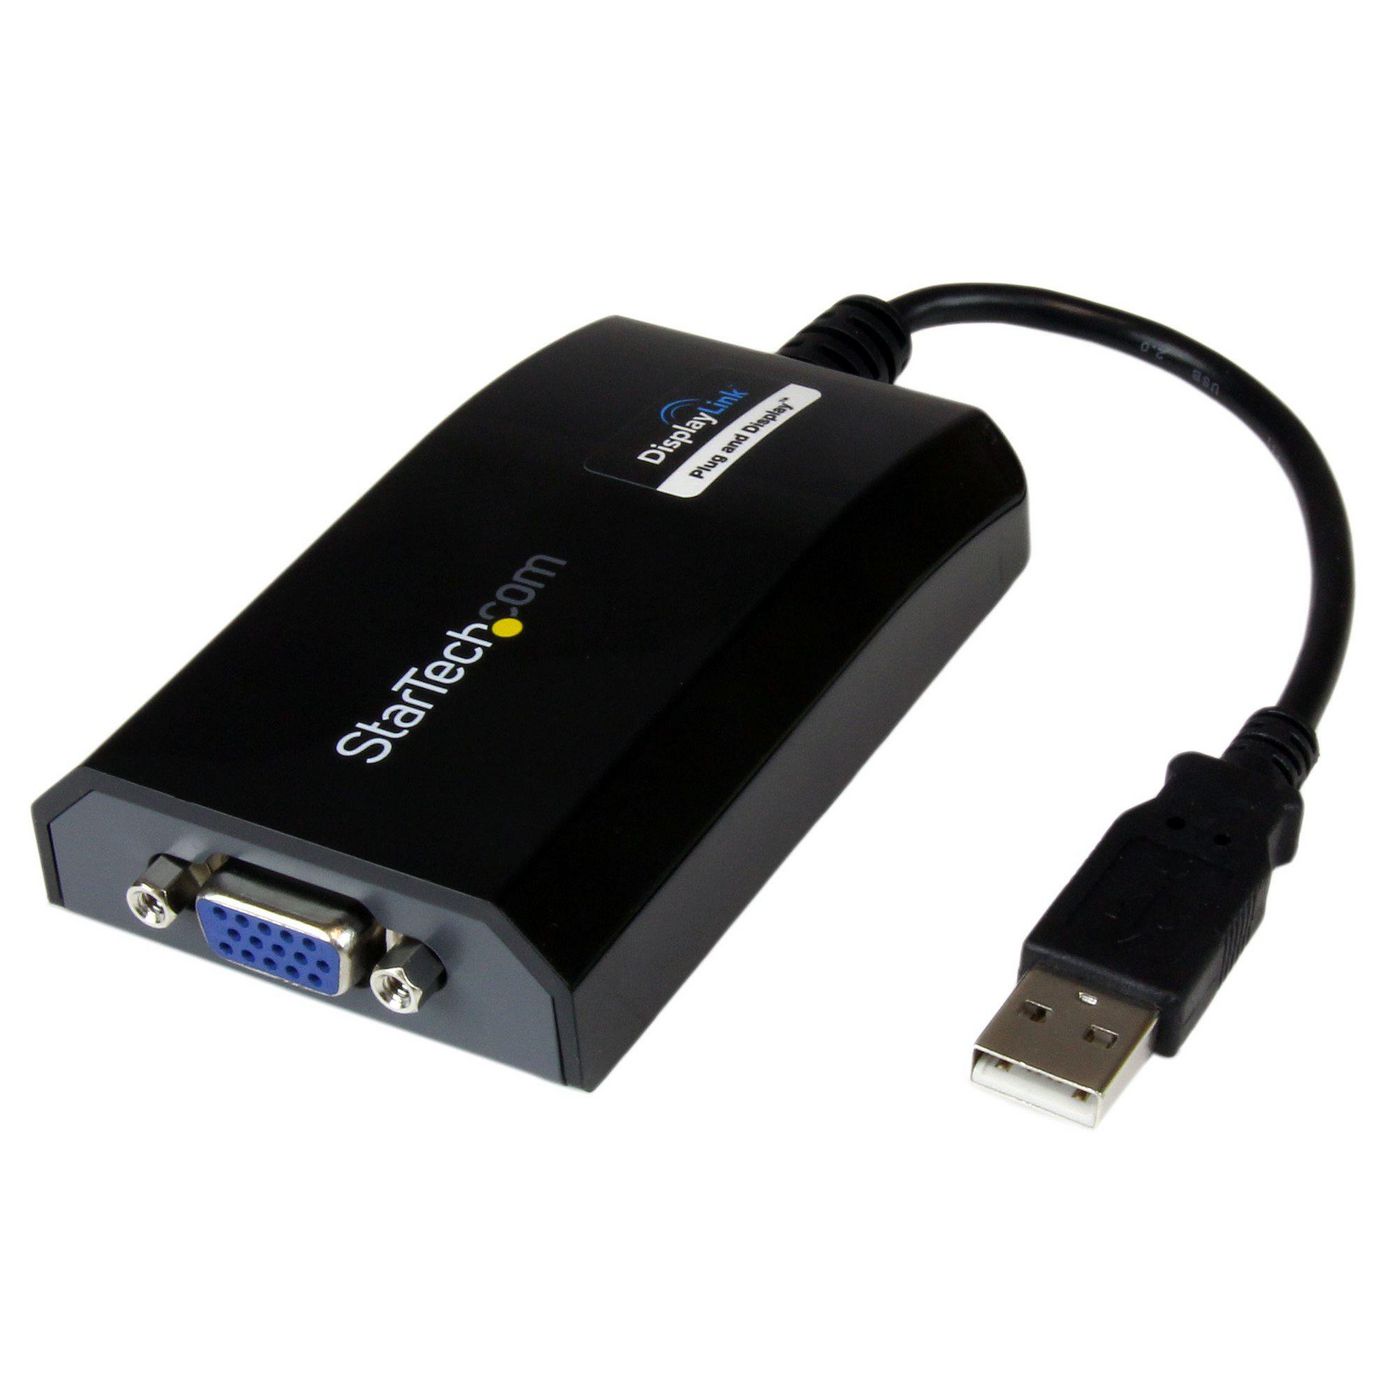 STARTECH.COM USB auf VGA Video Adapter - Externe Multi Monitor Grafikkarte für PC und MAC - 1920x120